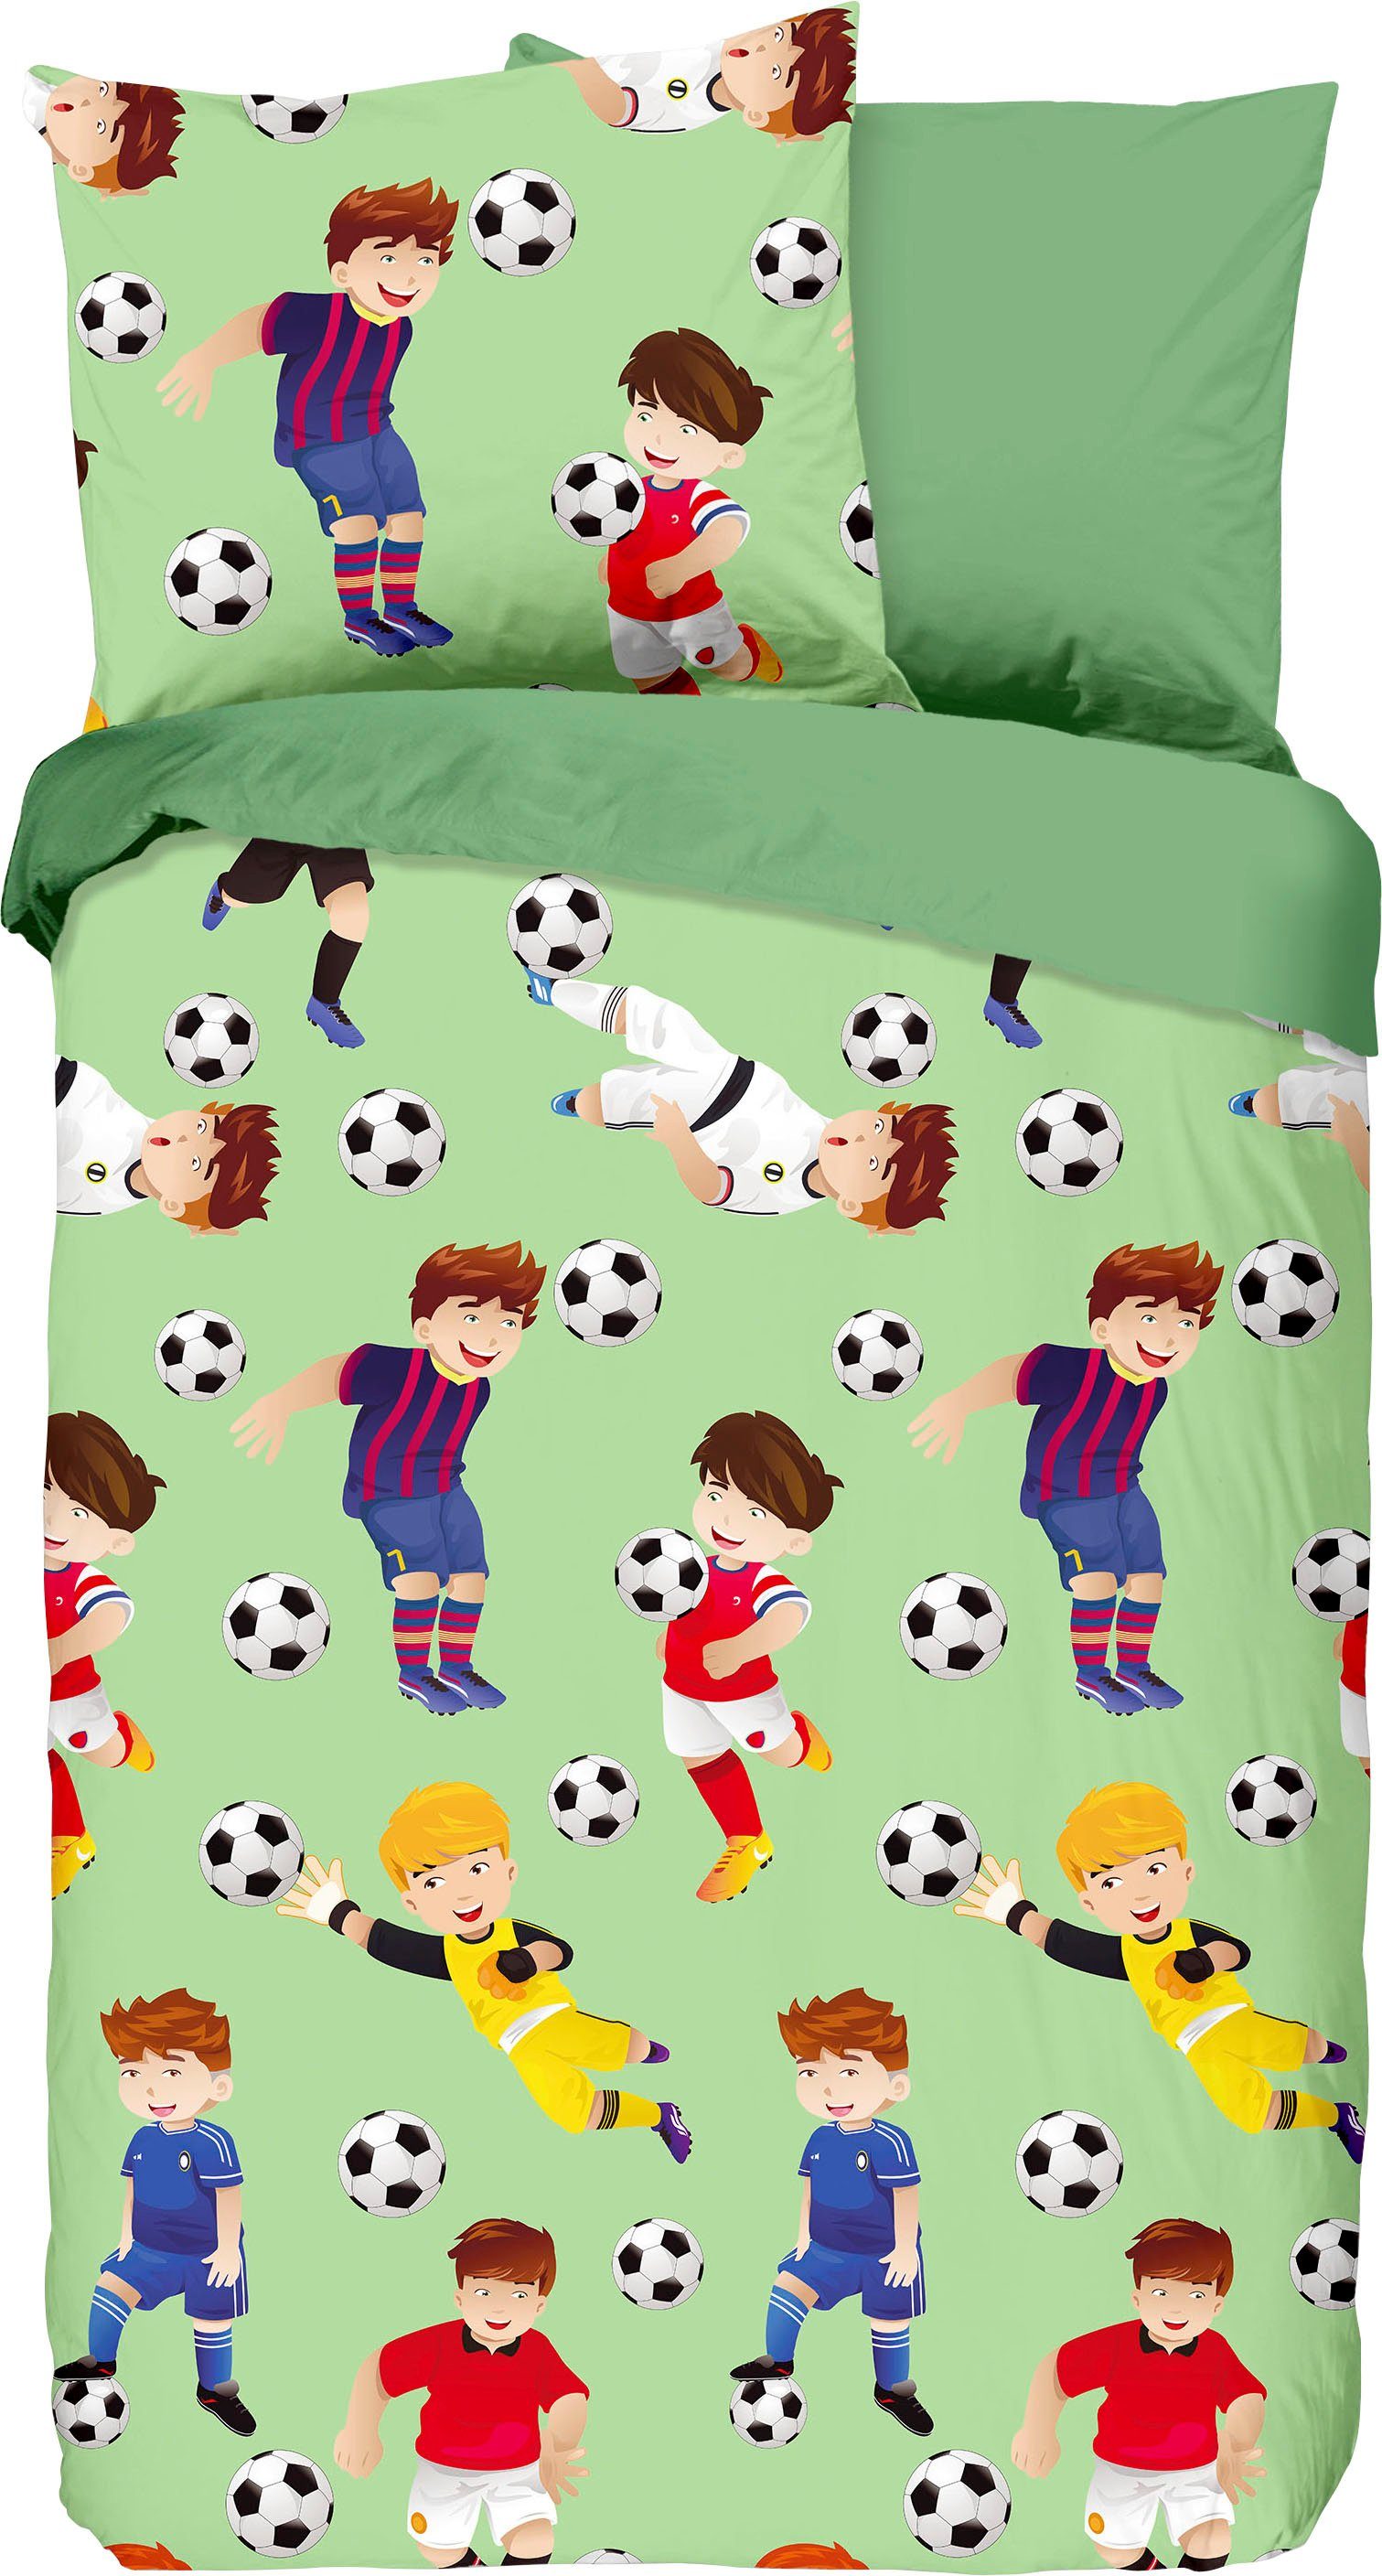 Kinderbettwäsche Go, good morning, Renforcé, 2 teilig, mit Fußball-Motiv,  Lebendige Farben und schöne Muster bringen Sie zum träumen.